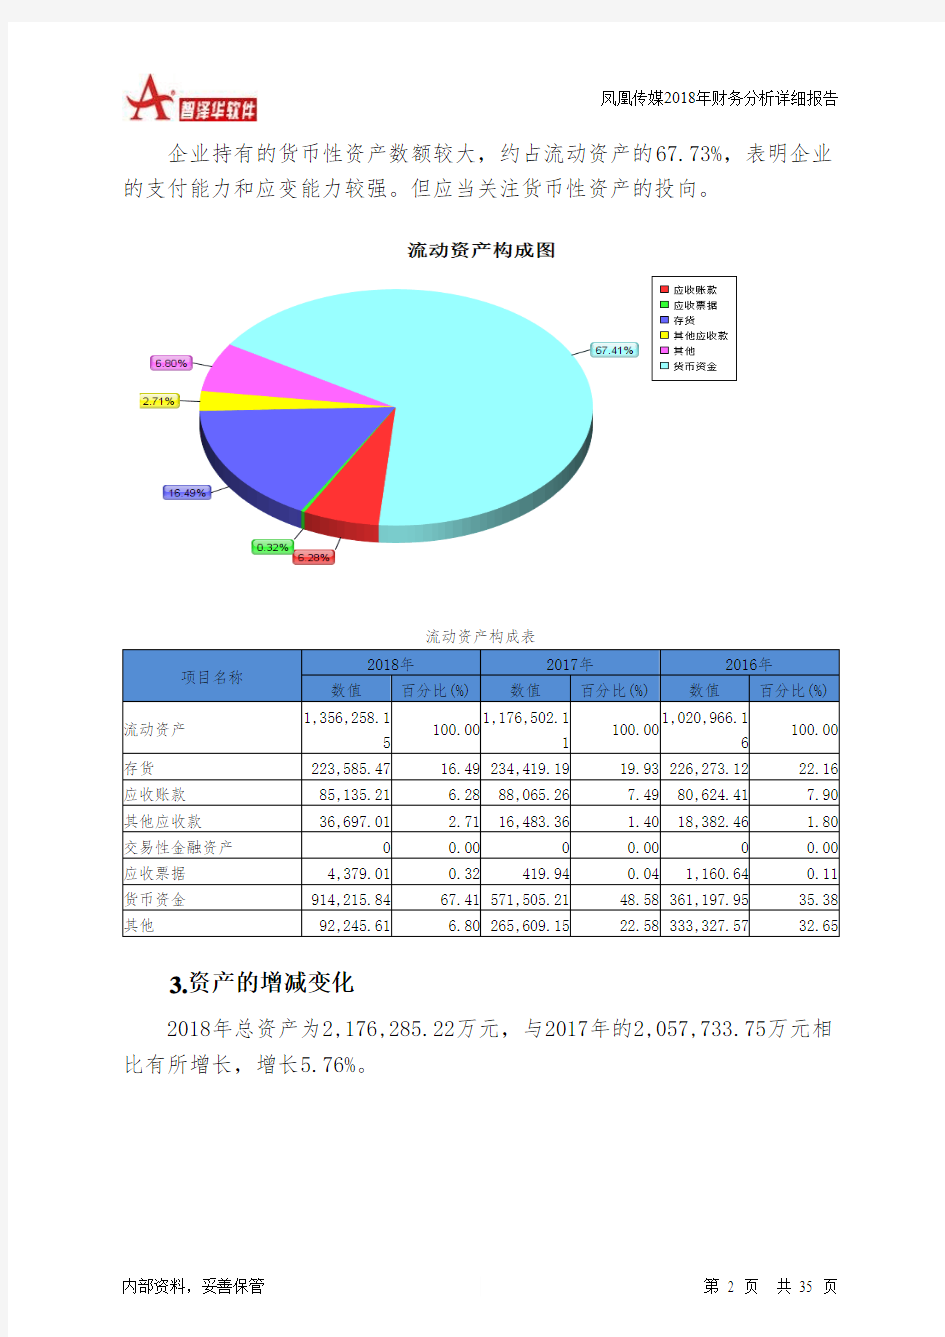 凤凰传媒2018年财务分析详细报告-智泽华